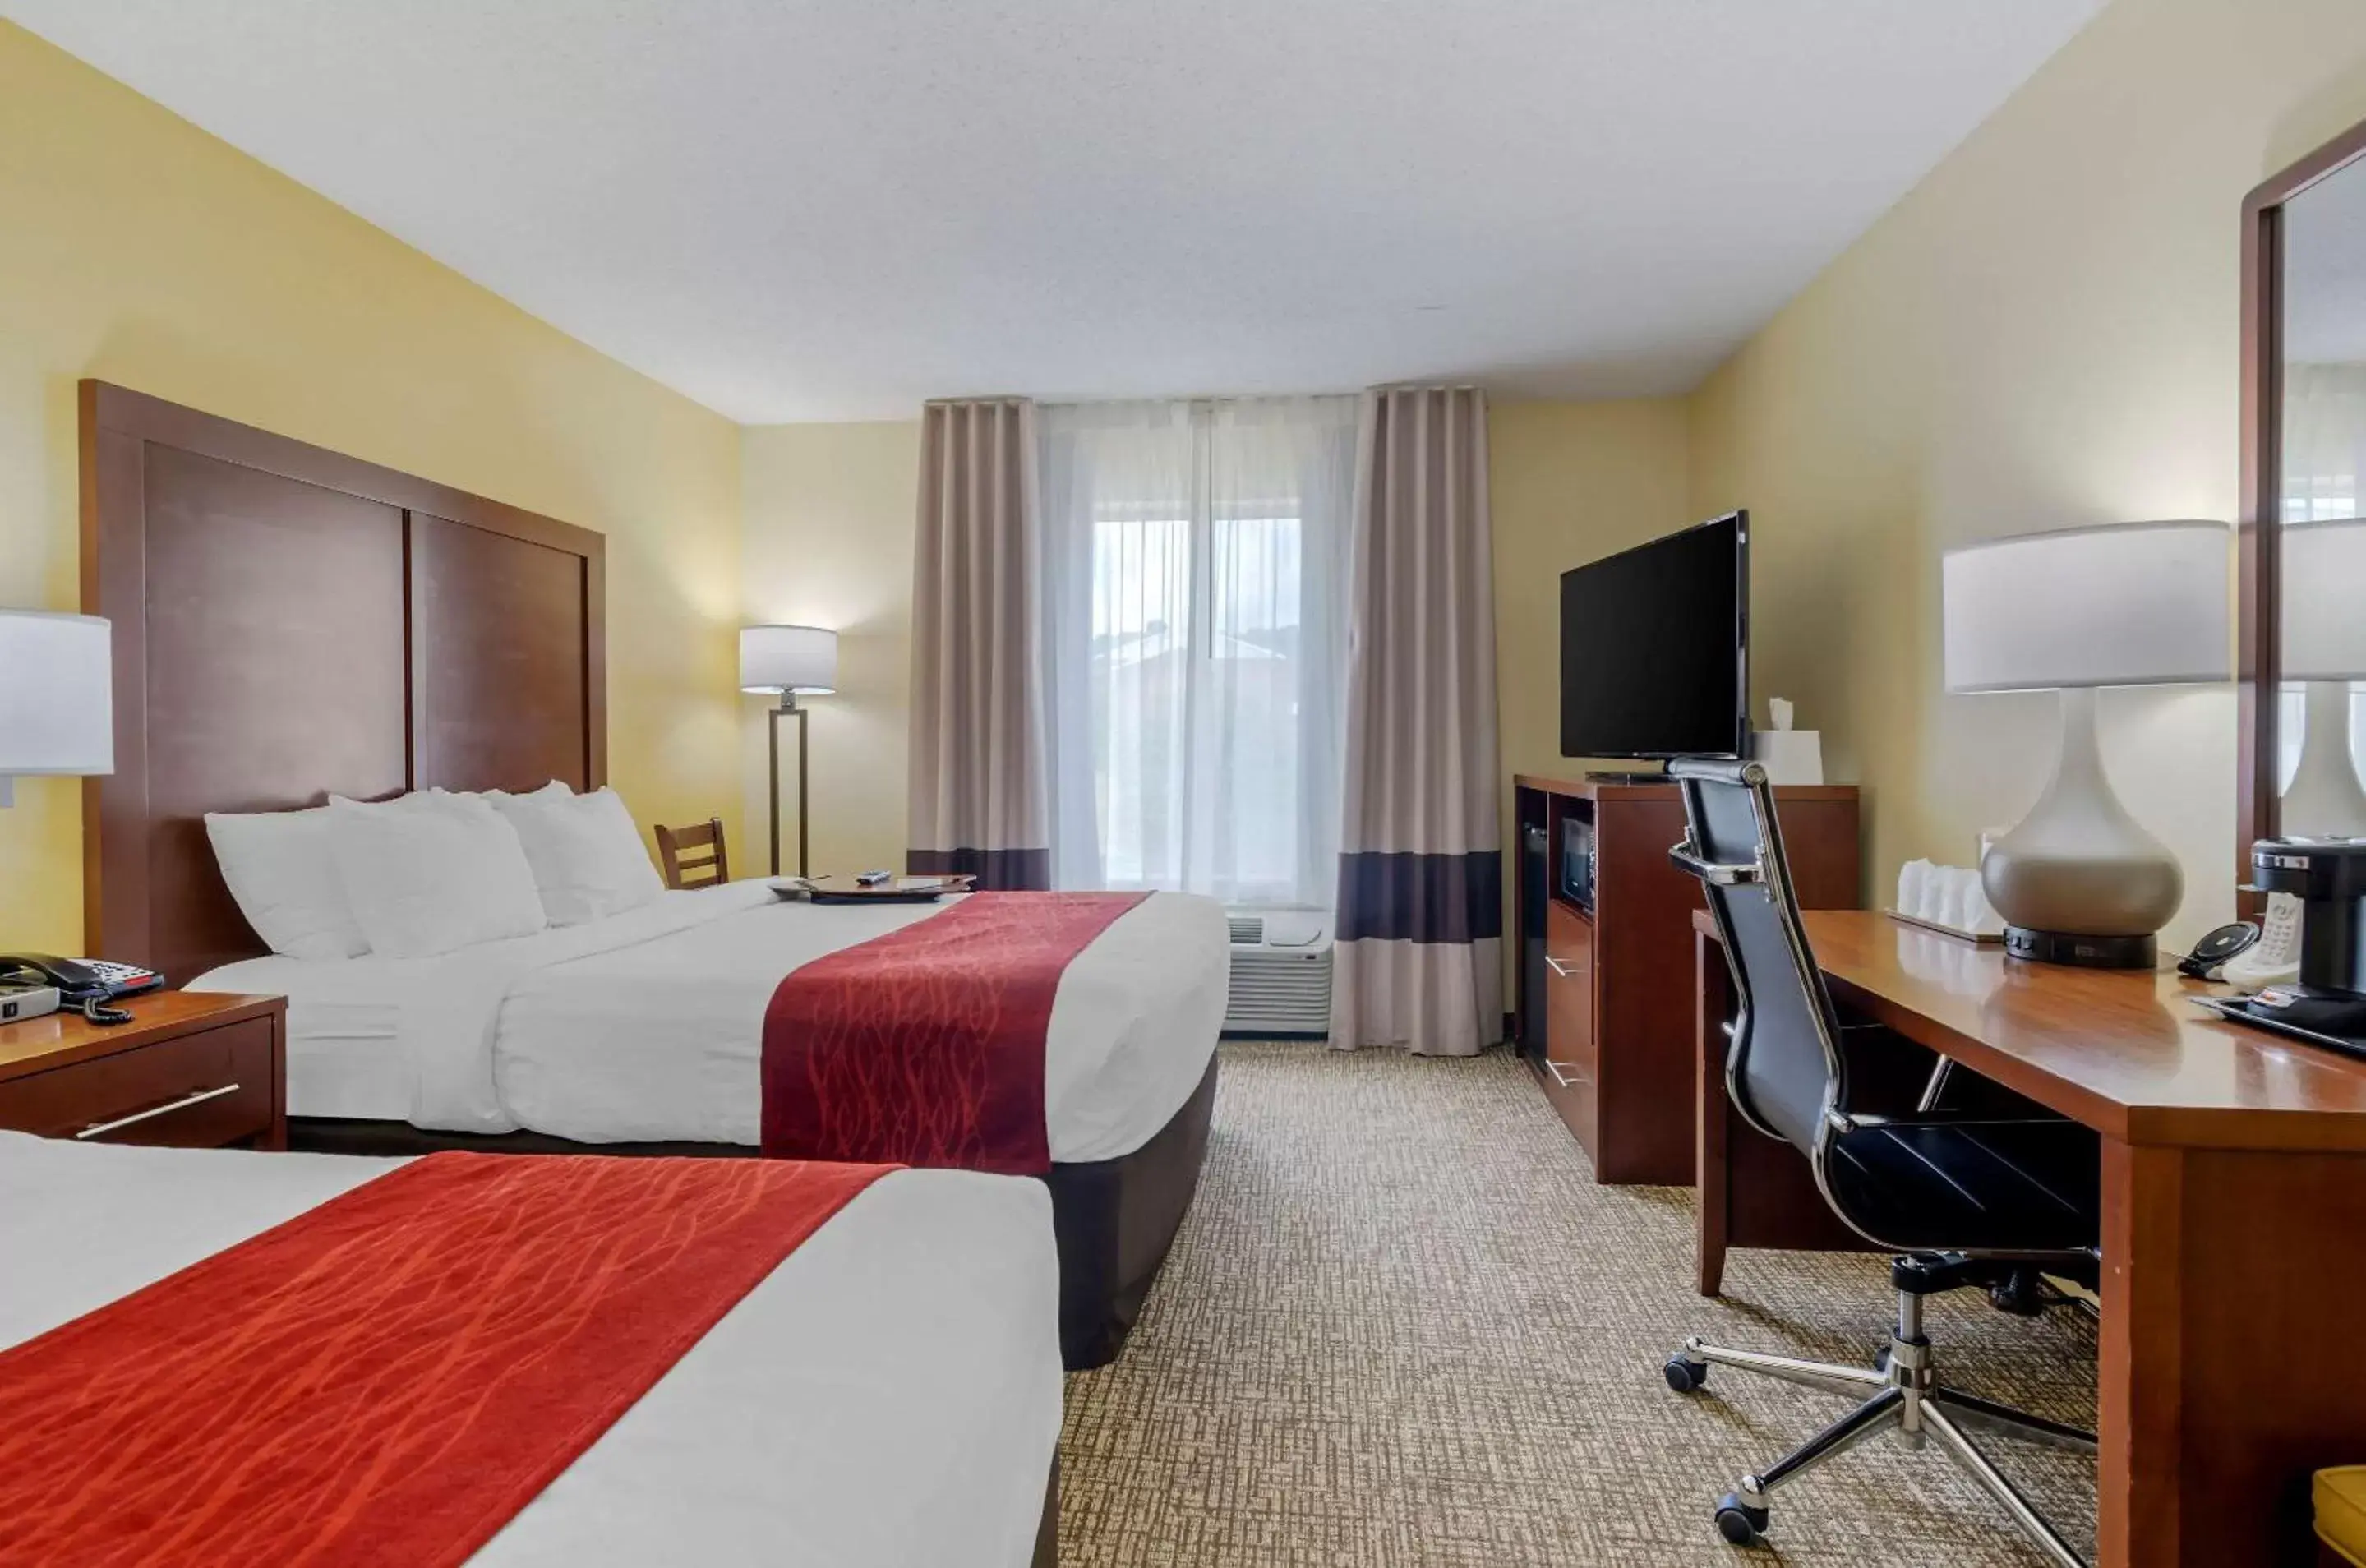 Bedroom, TV/Entertainment Center in Comfort Inn & Suites Hillsville I-77